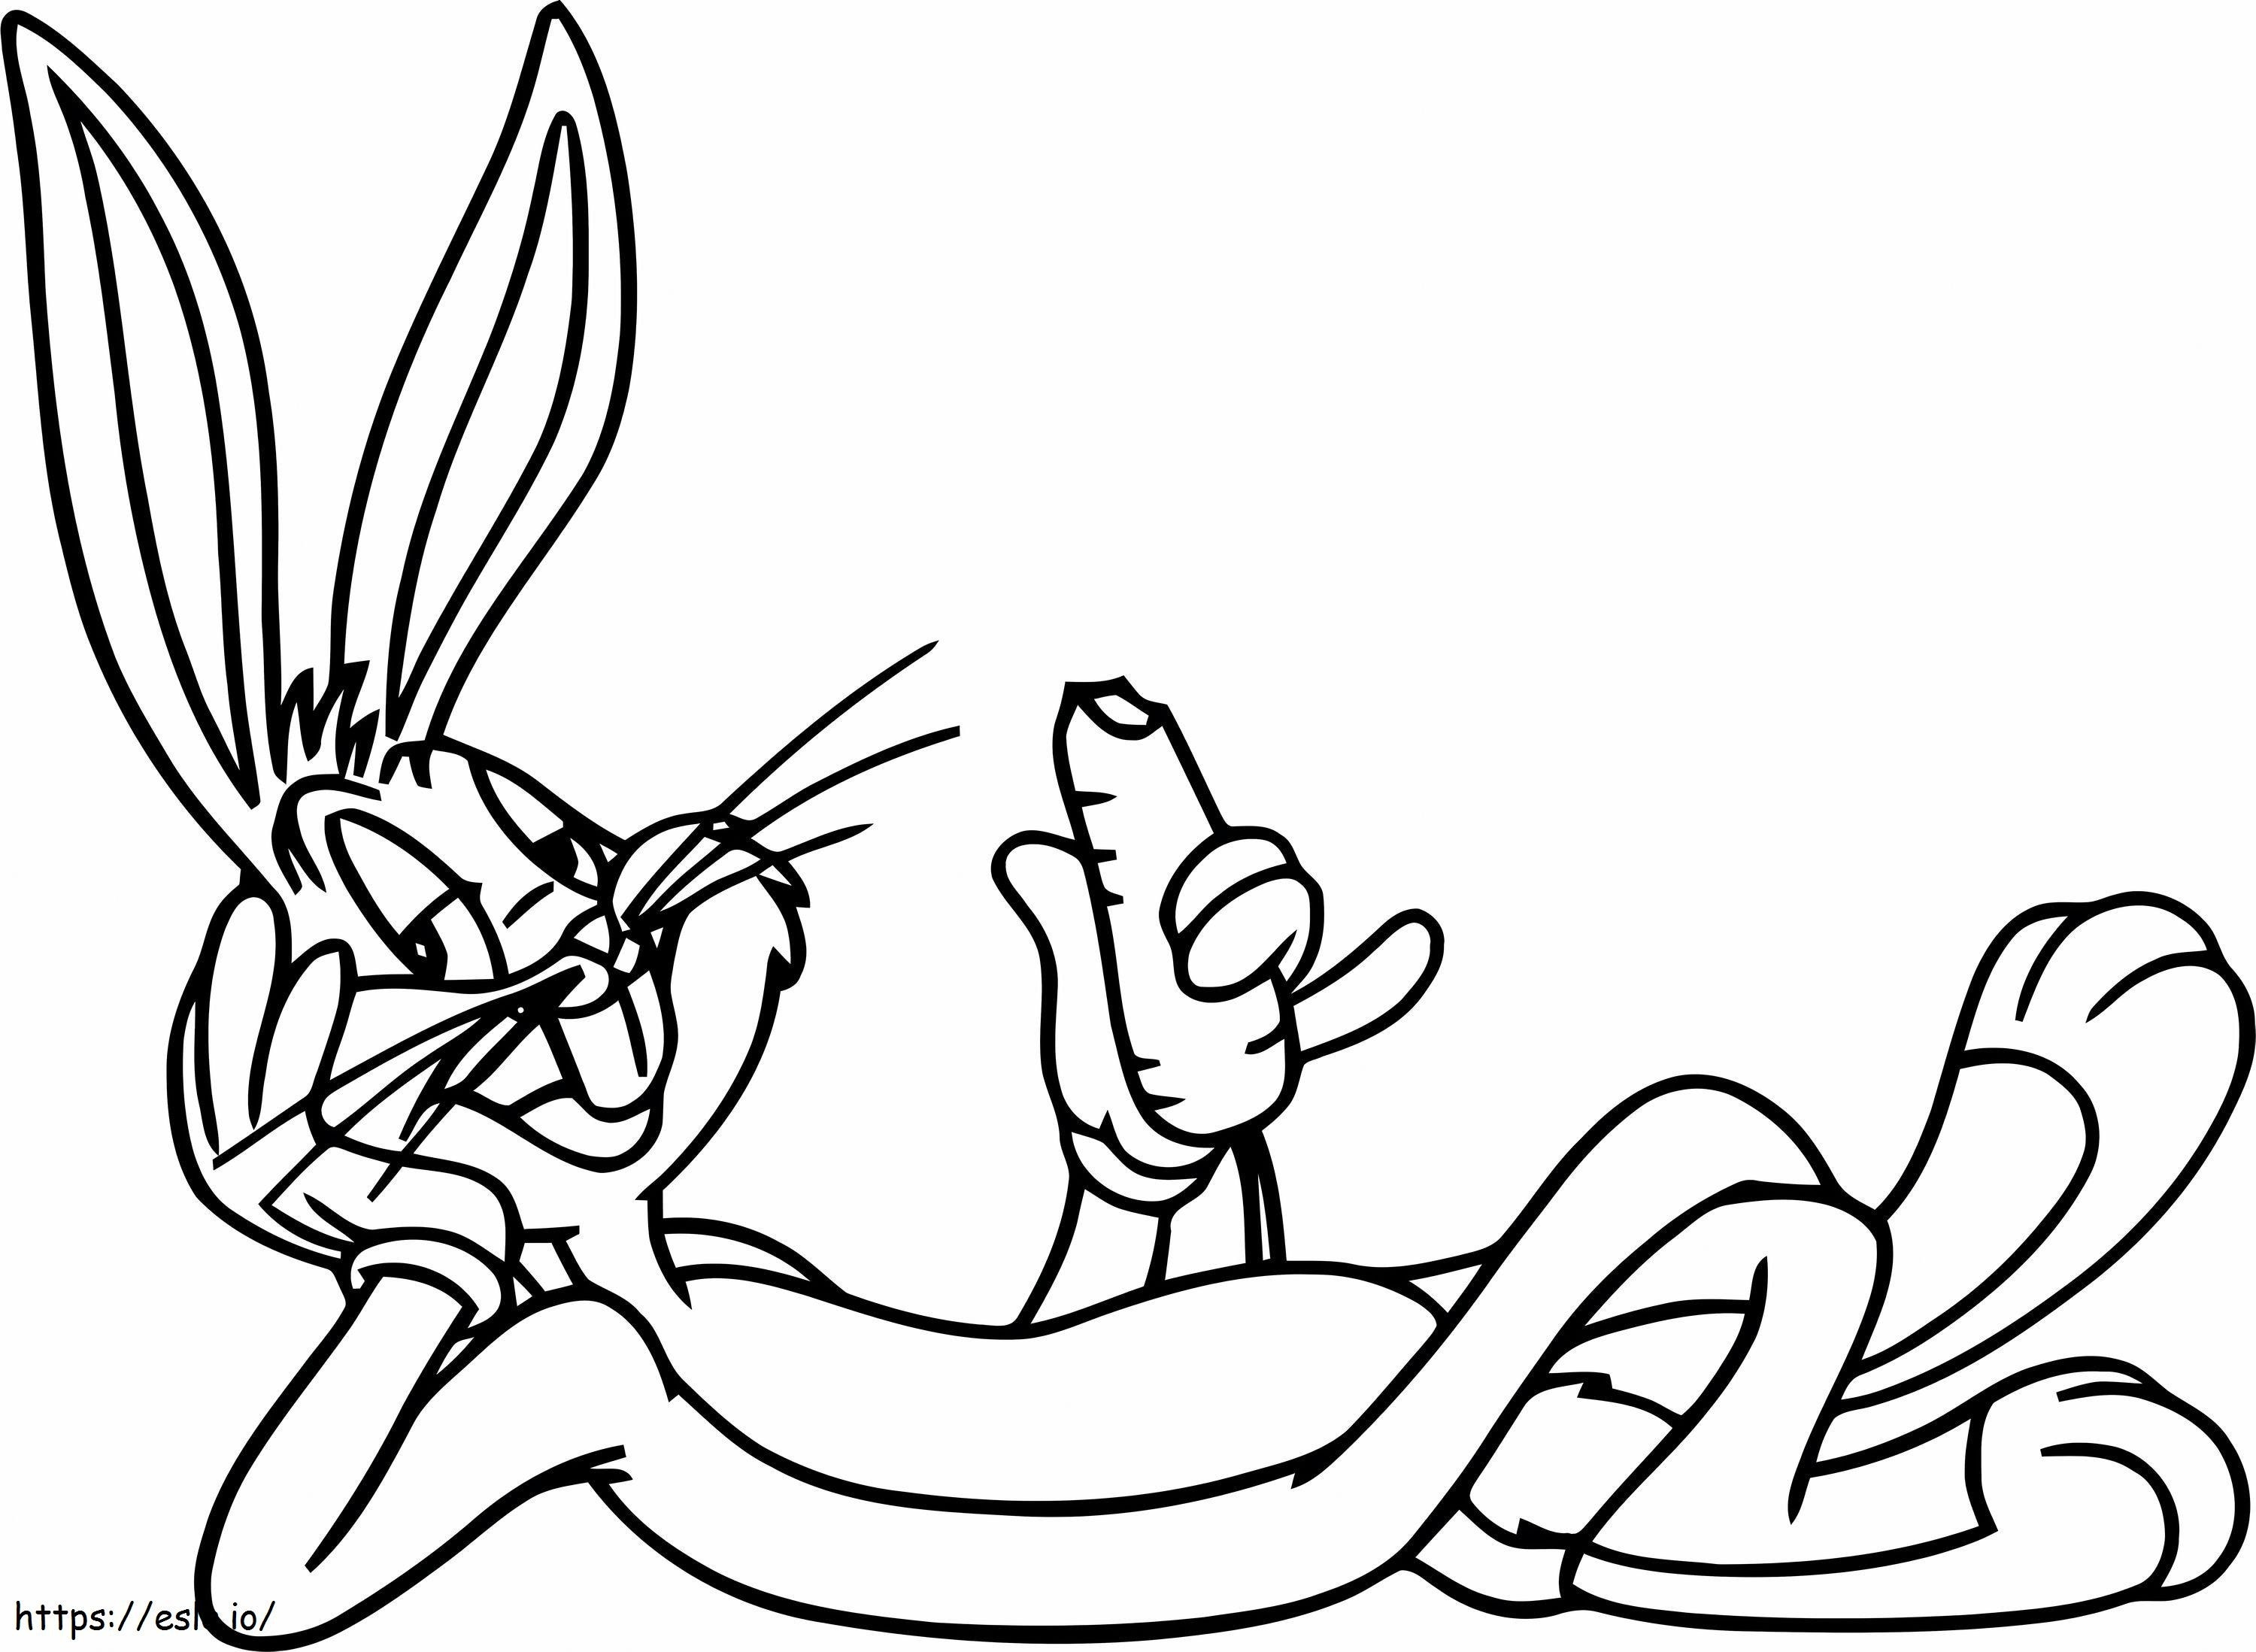 Bugs Bunny Mangia Carote In Scala da colorare